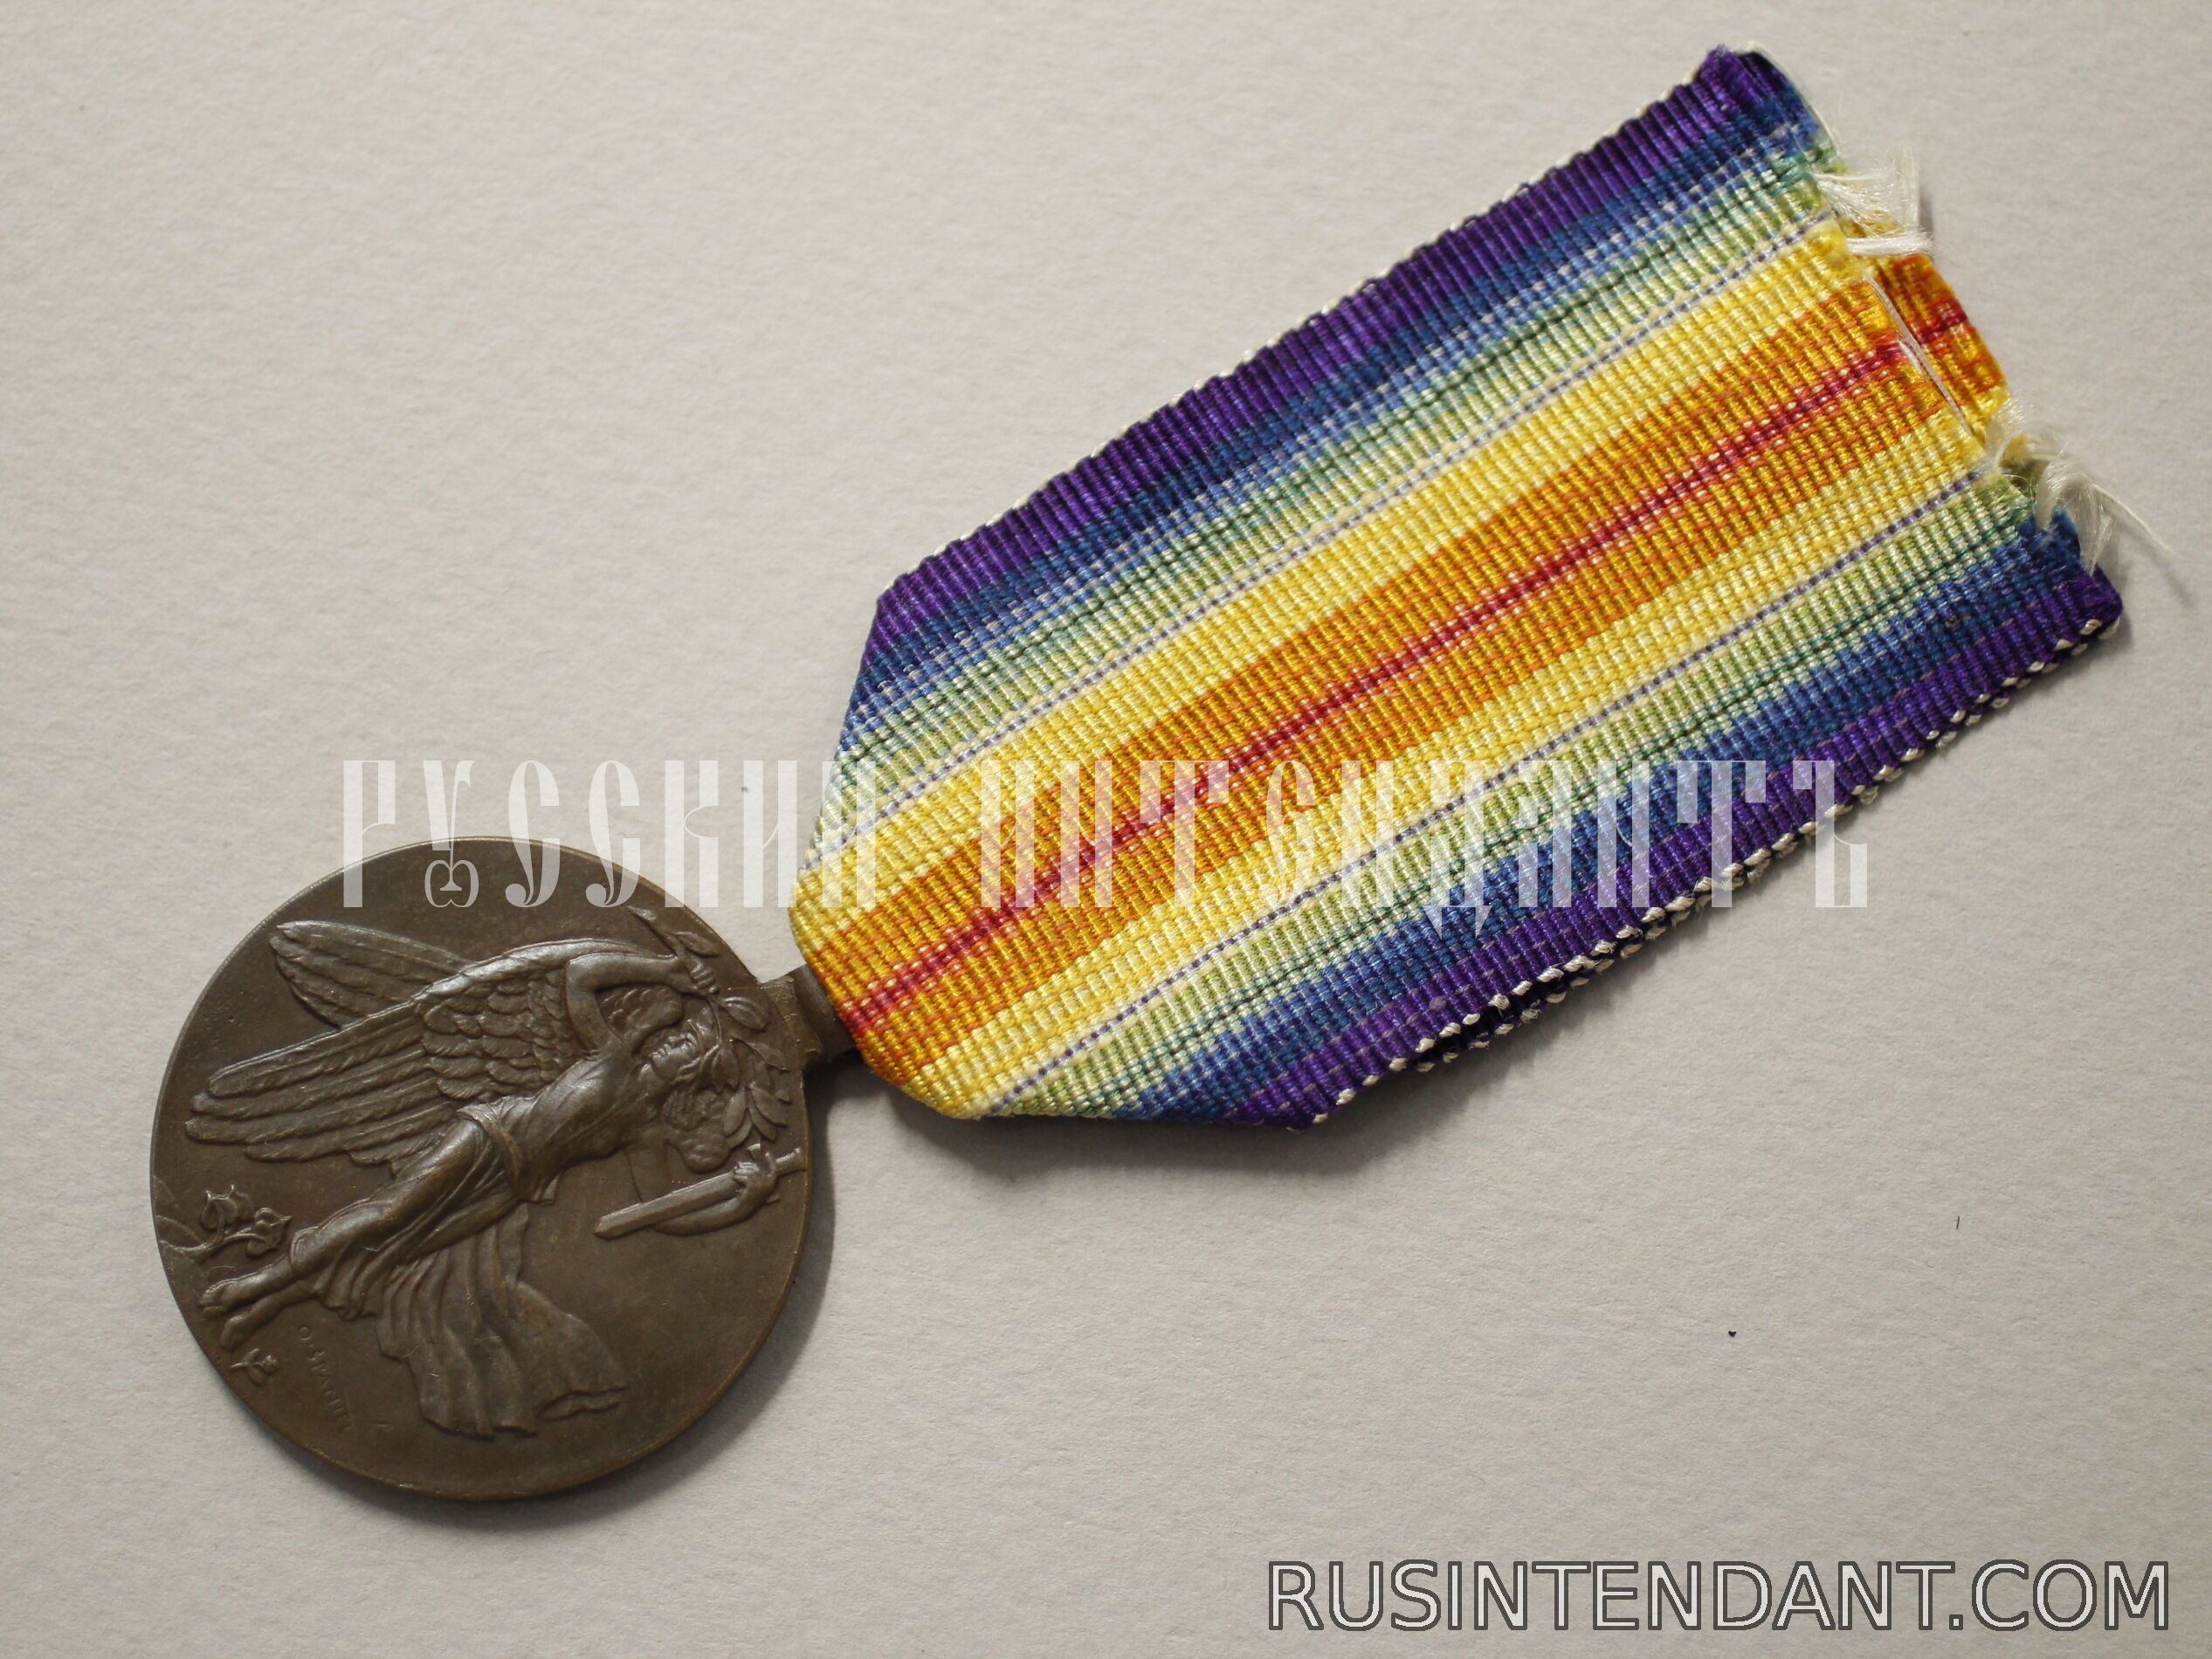 Фото 3: Чехословацкая «Медаль Победы» 